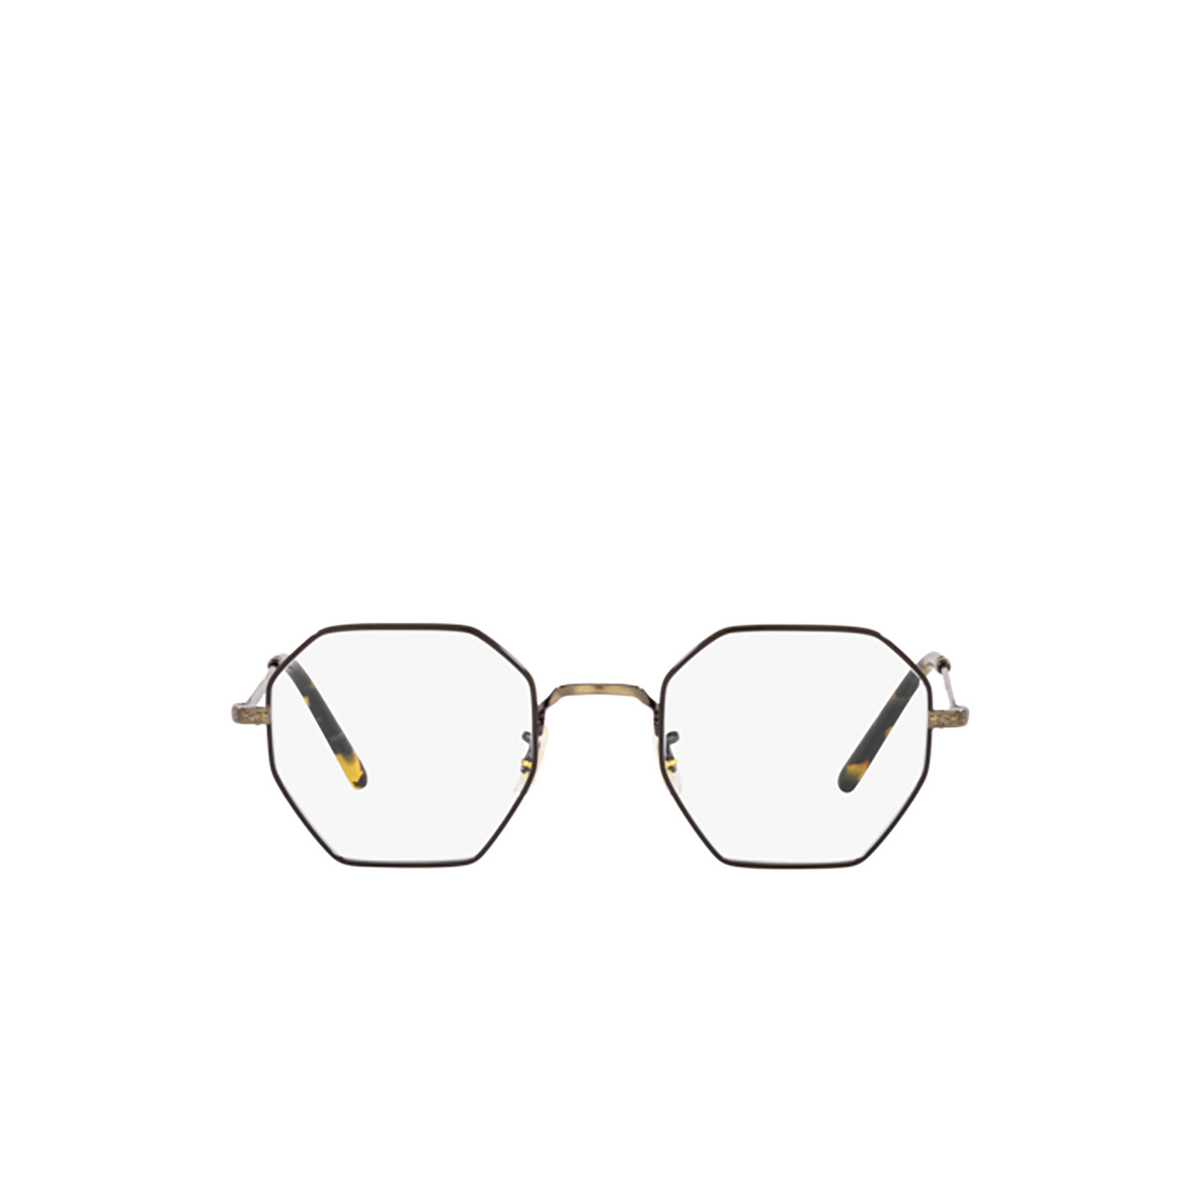 Oliver Peoples HOLENDER Eyeglasses 5317 Antique Gold / Black - front view